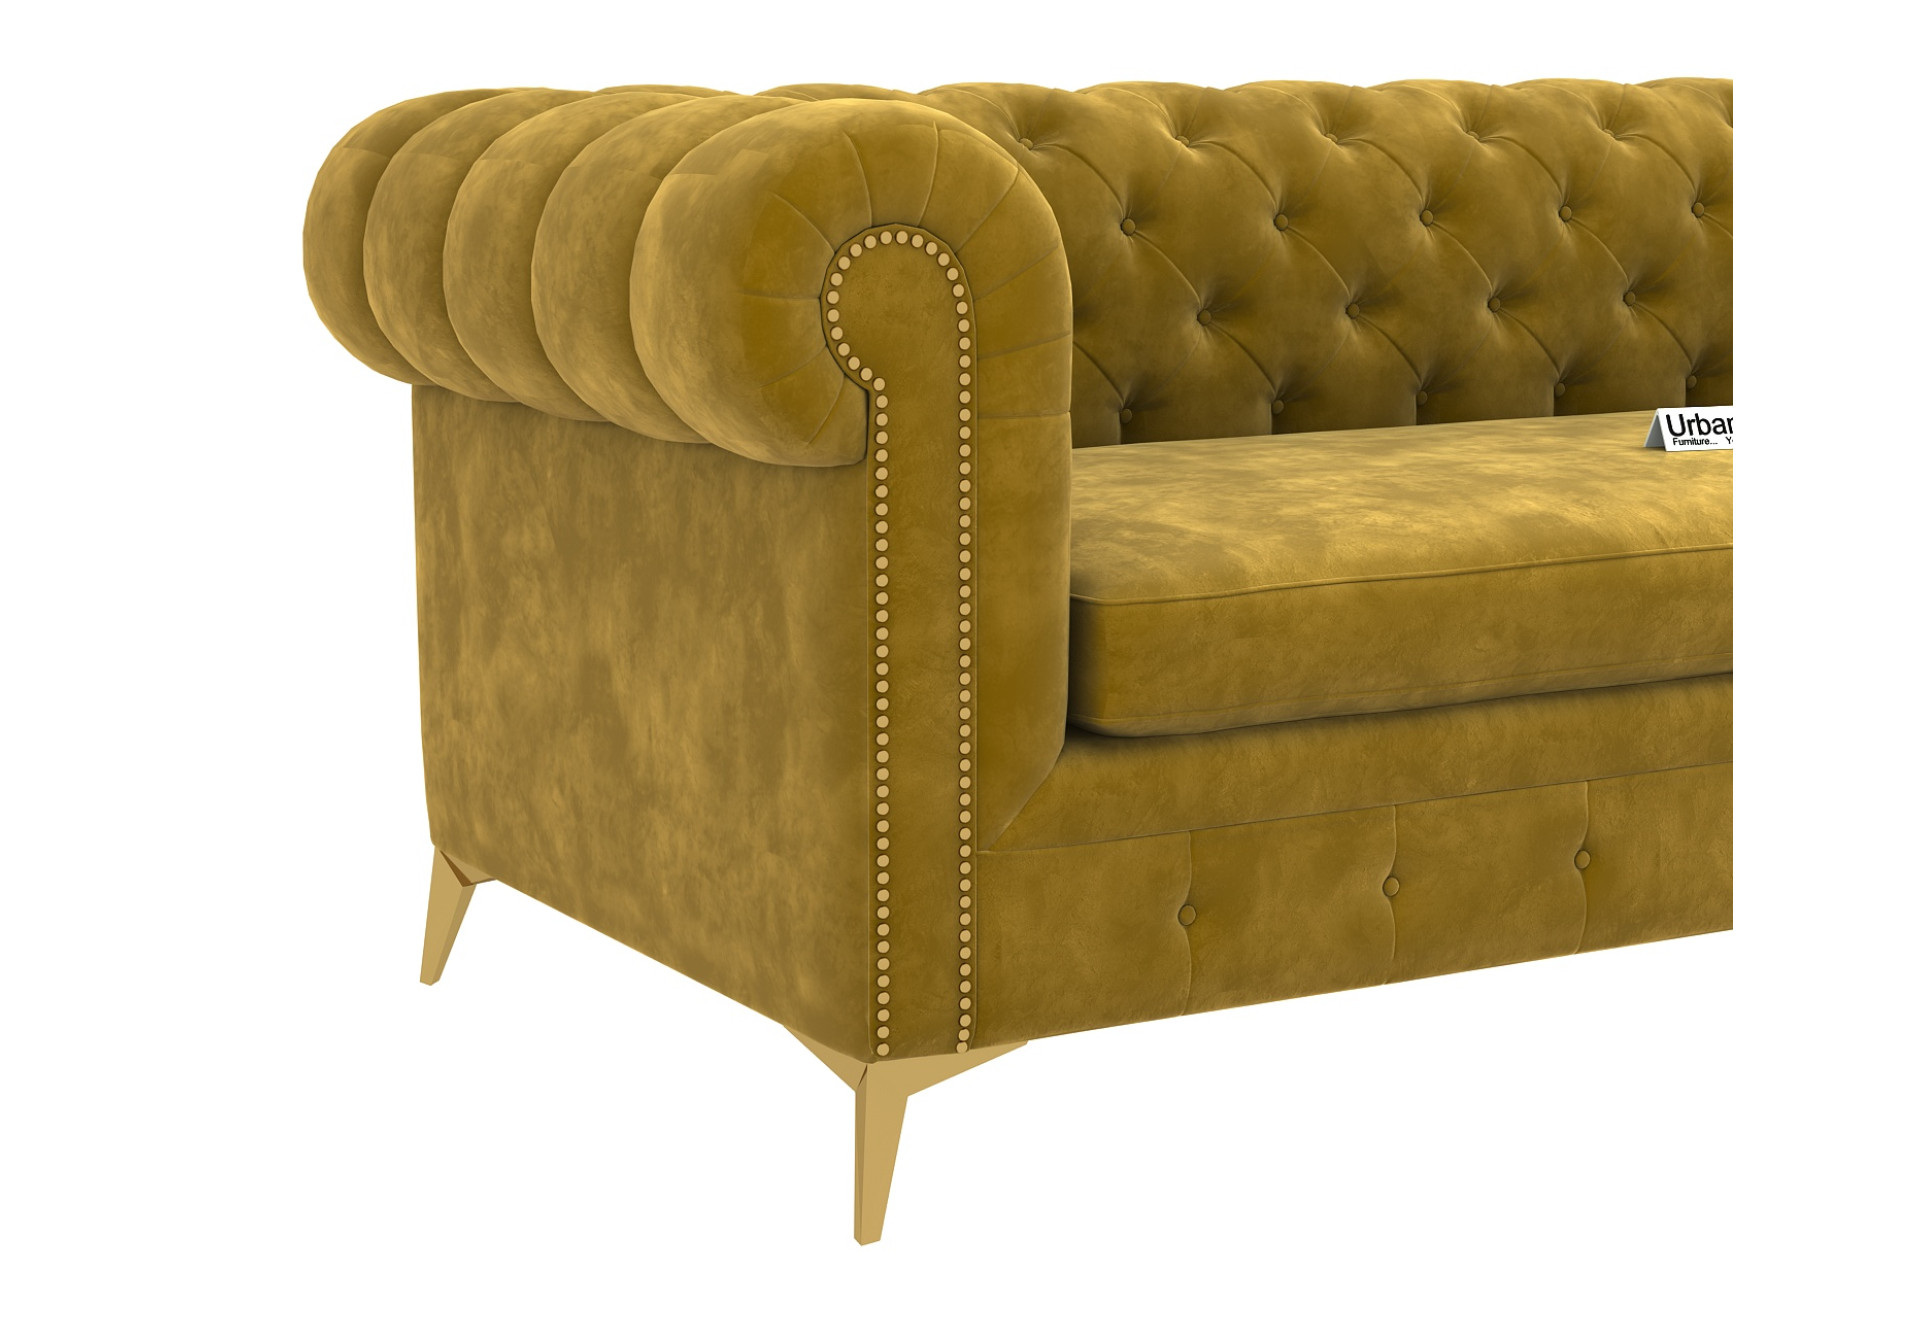 Regal 3 Seater Fabric Sofa (Velvet, Amber Gold)